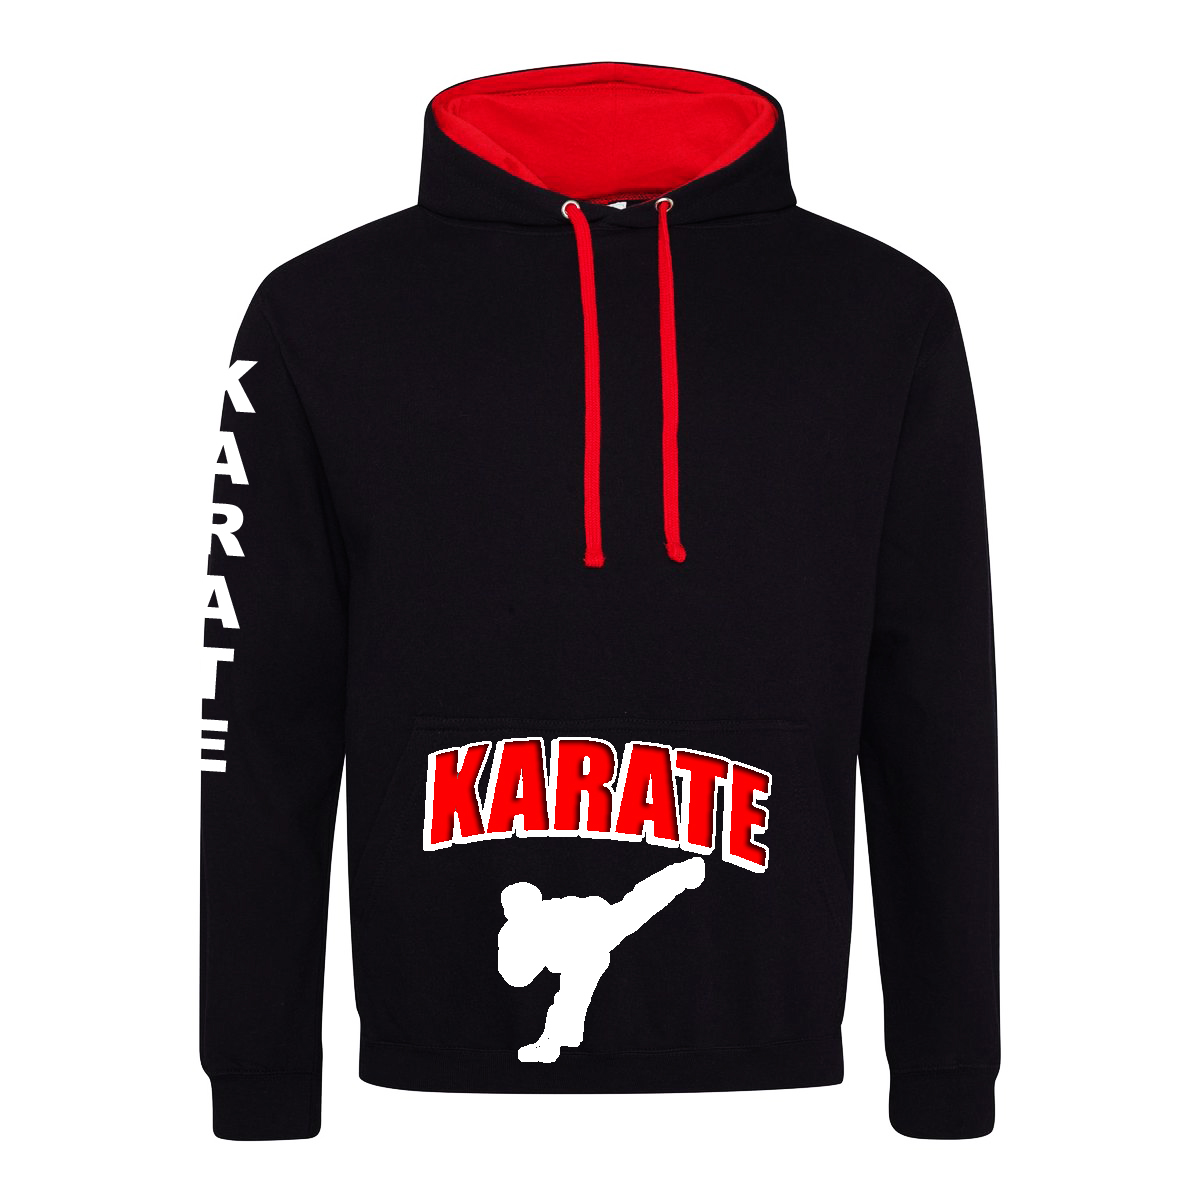 schwarzer Hoodie mit Karate Motiv auf der Tasche